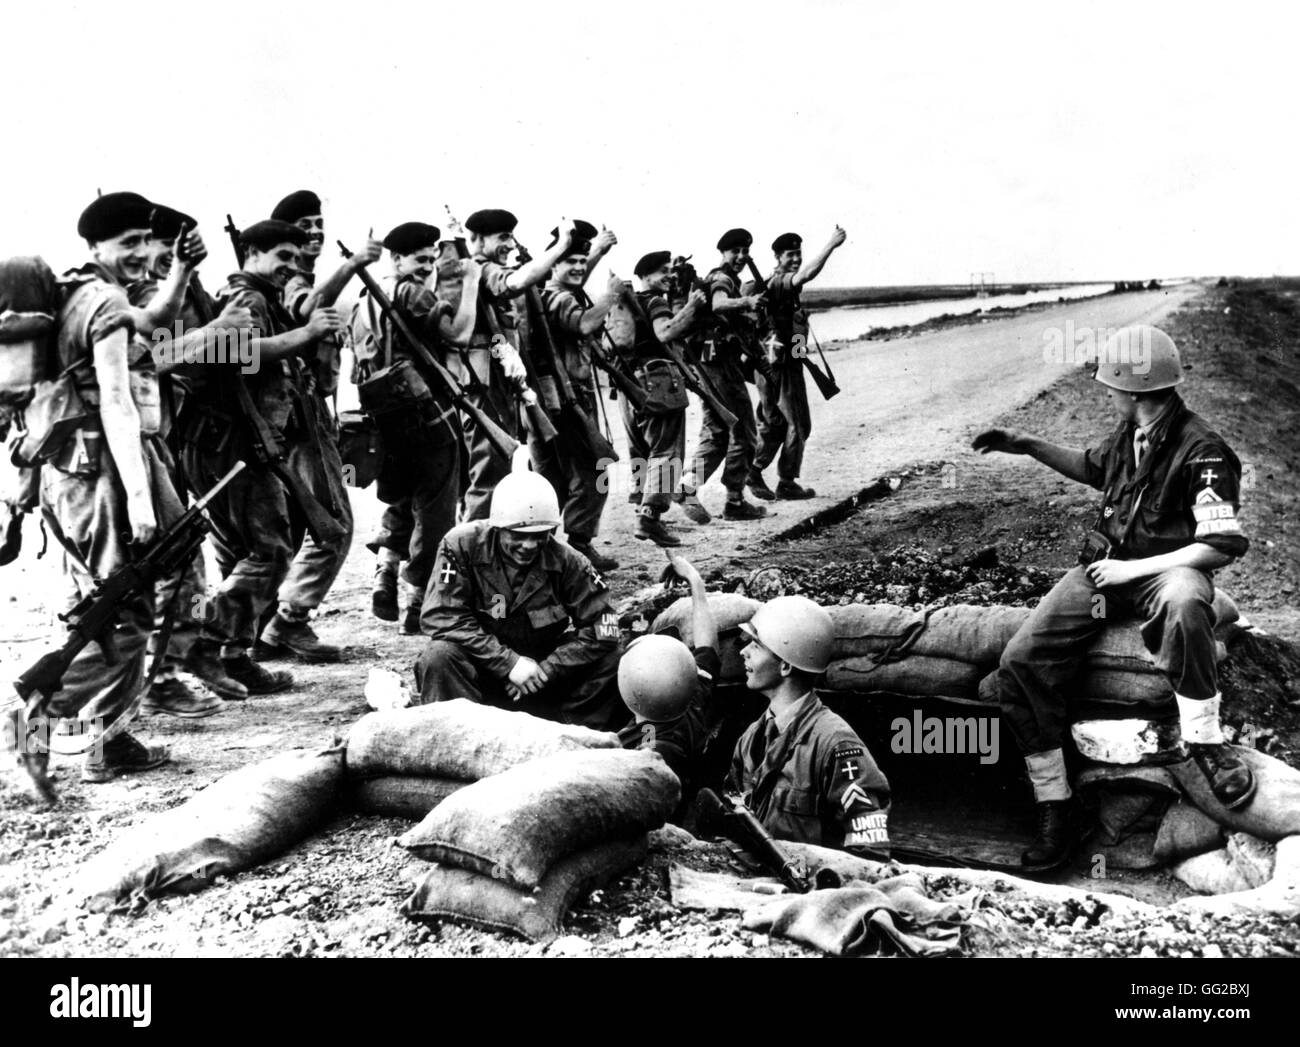 Les troupes danoises de prendre la relève des forces armées U.N.O. postes avancés que les unités britanniques quittent dans la région du canal de Suez Egypte 1956 - L'affaire de Suez - Bibliothèque du Congrès de Washington Banque D'Images